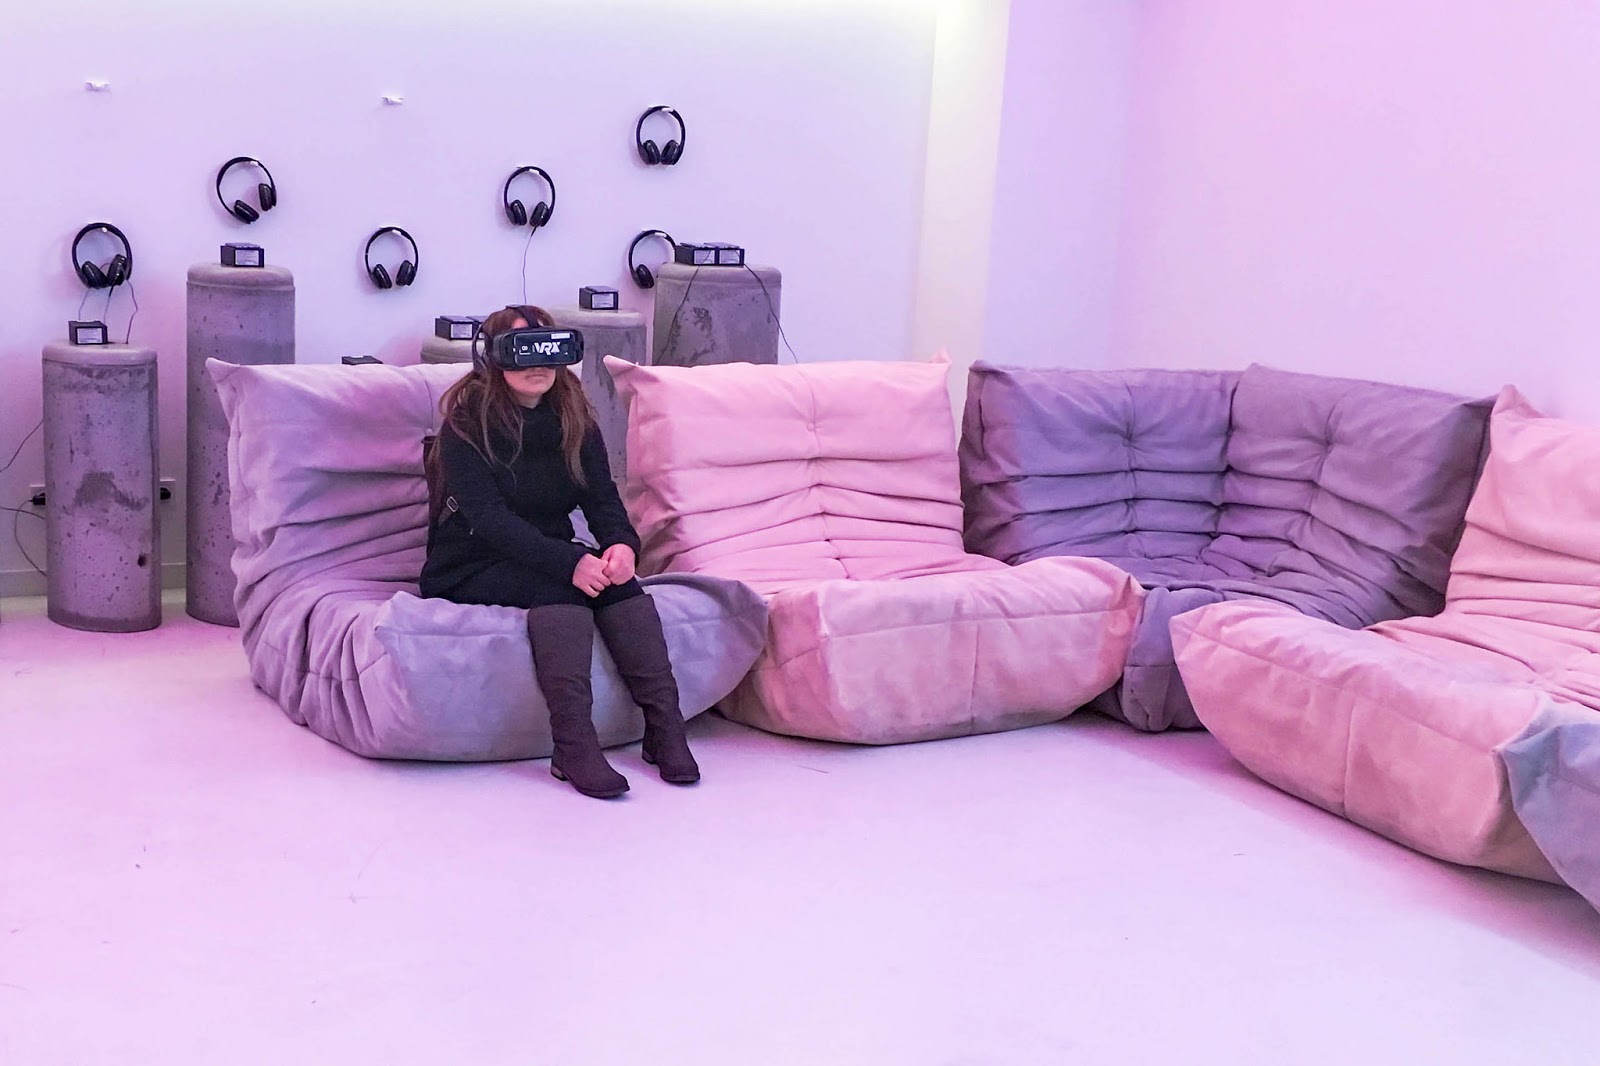 Vr комната metaforce. VR комната. VR комната своя. Реклама VR комнаты. Маленькая комната для VR очков.